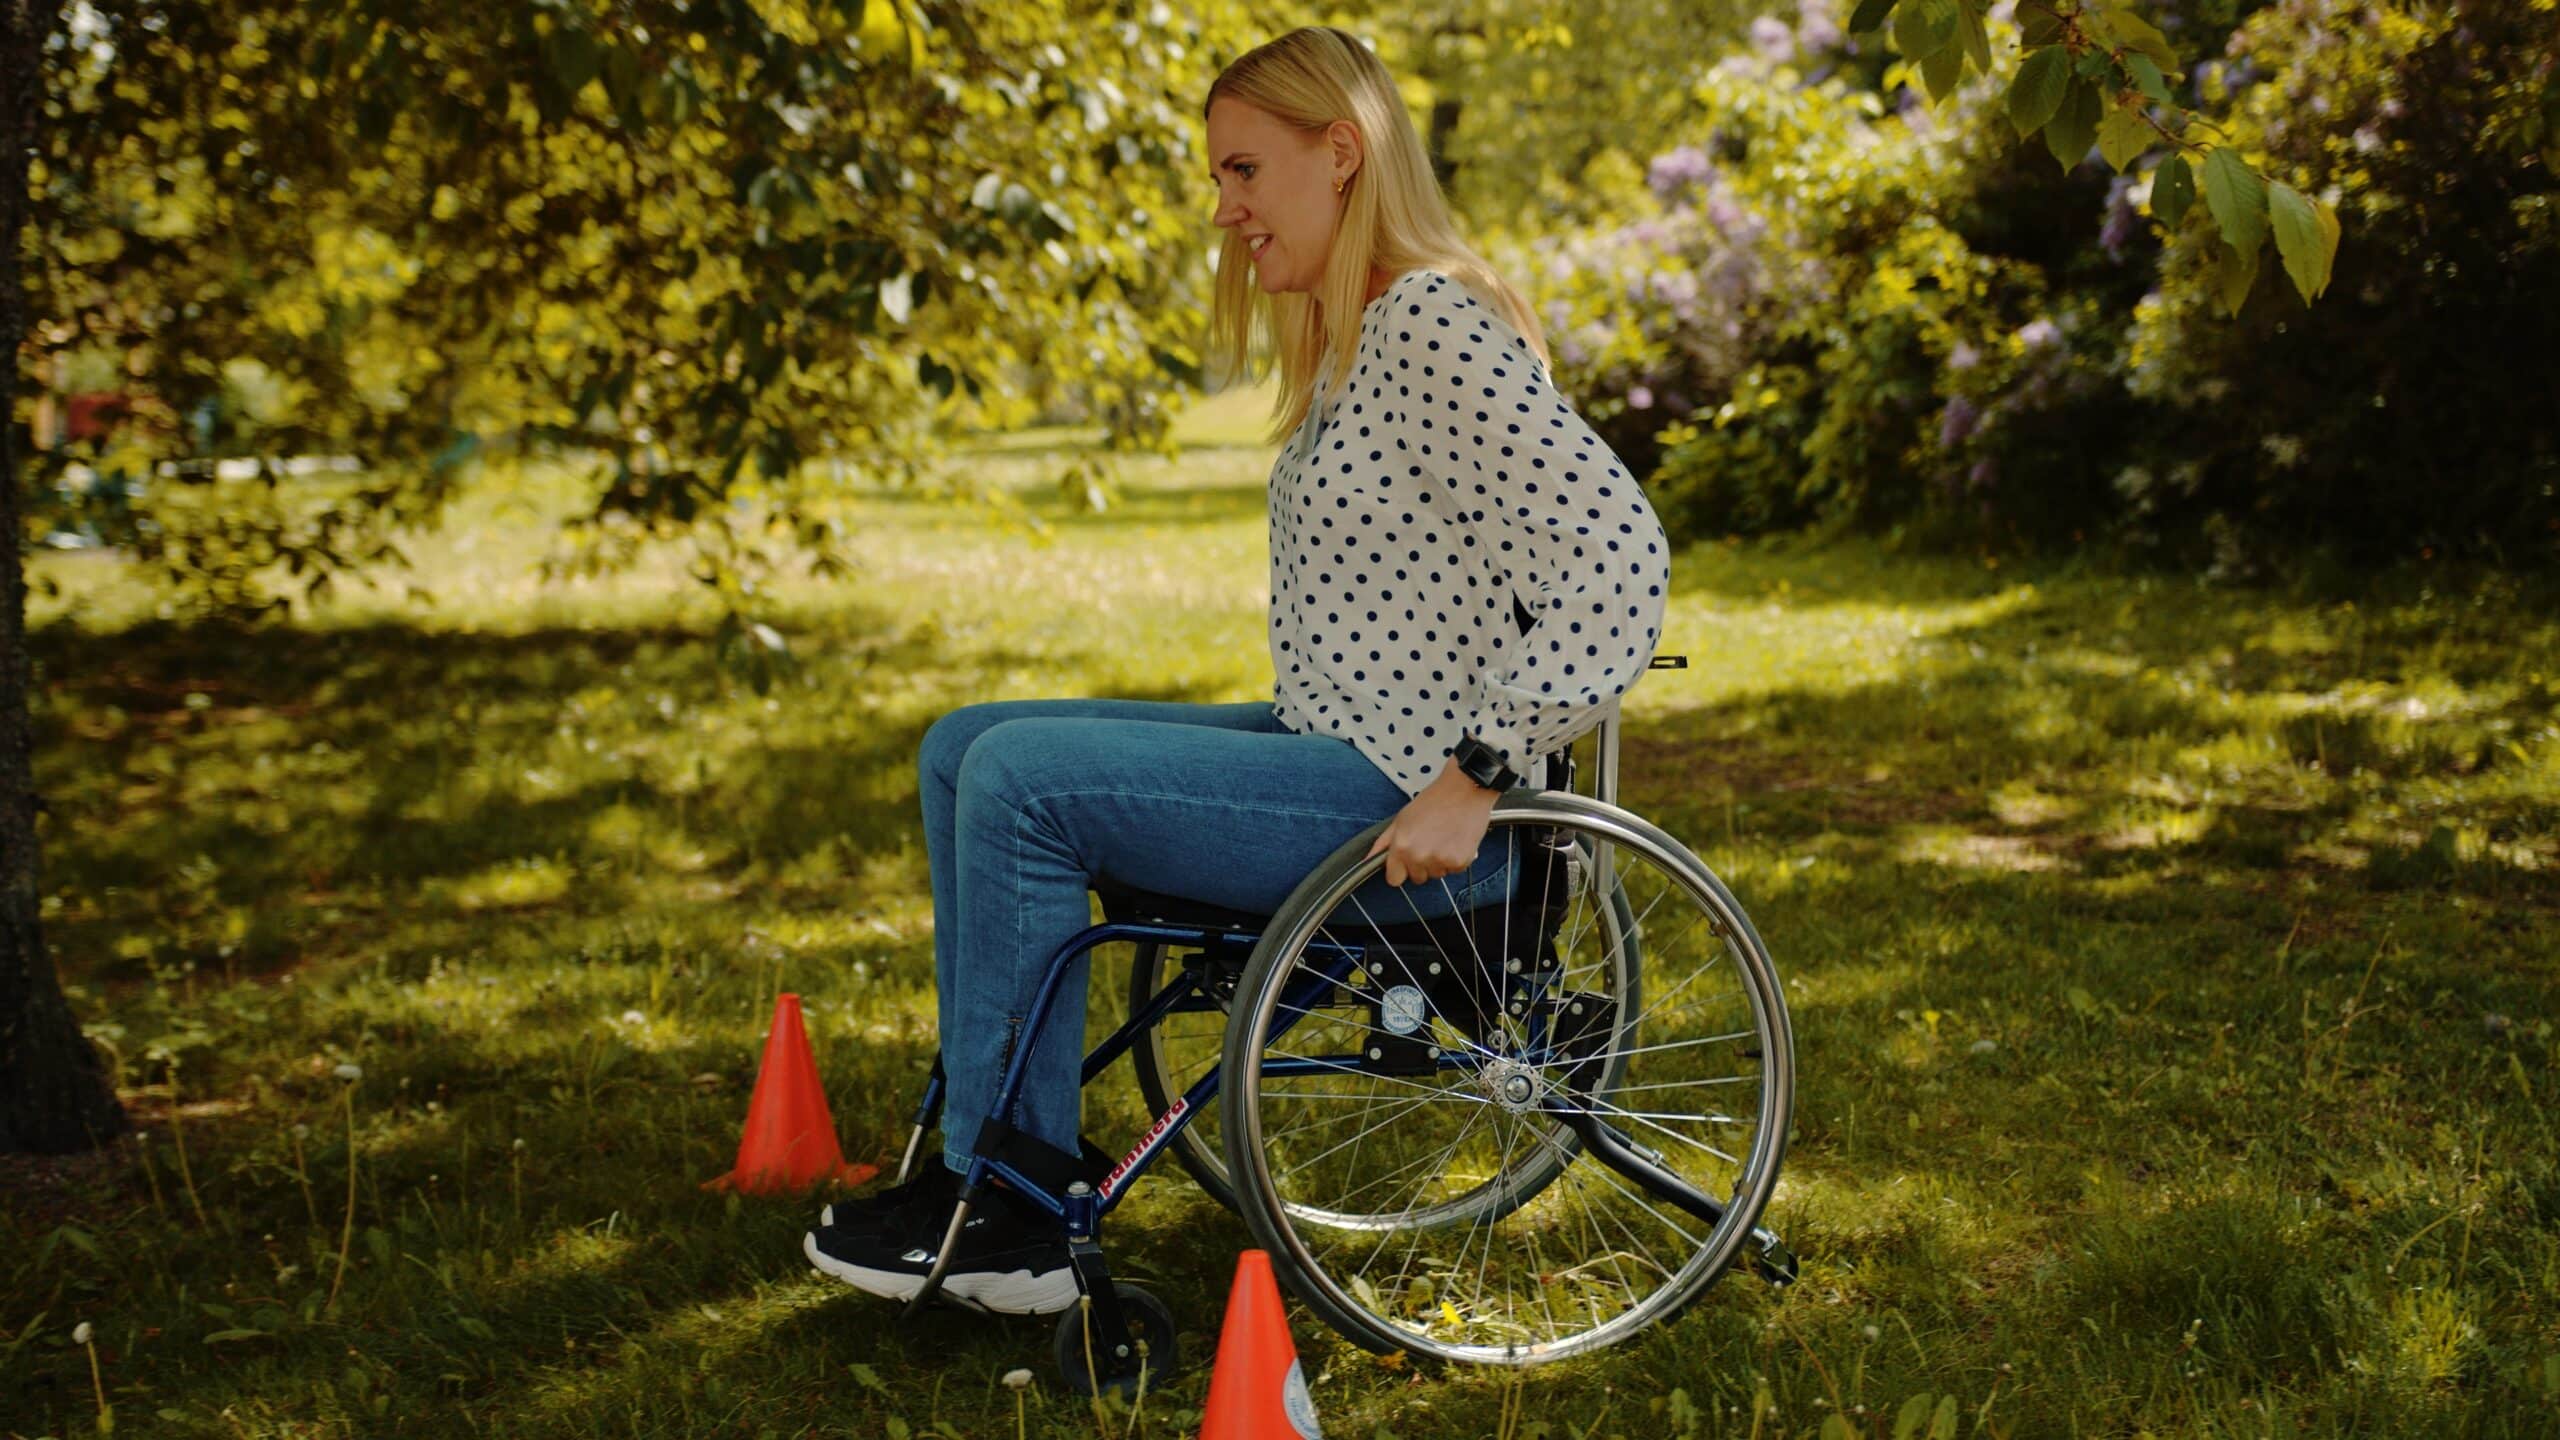 Blond kvinna sitter i rullstol i grönska och övar på en hinderbana med koner. Hon har vit tröja och blåa jeans, rullstolen är svart sett från sidan.